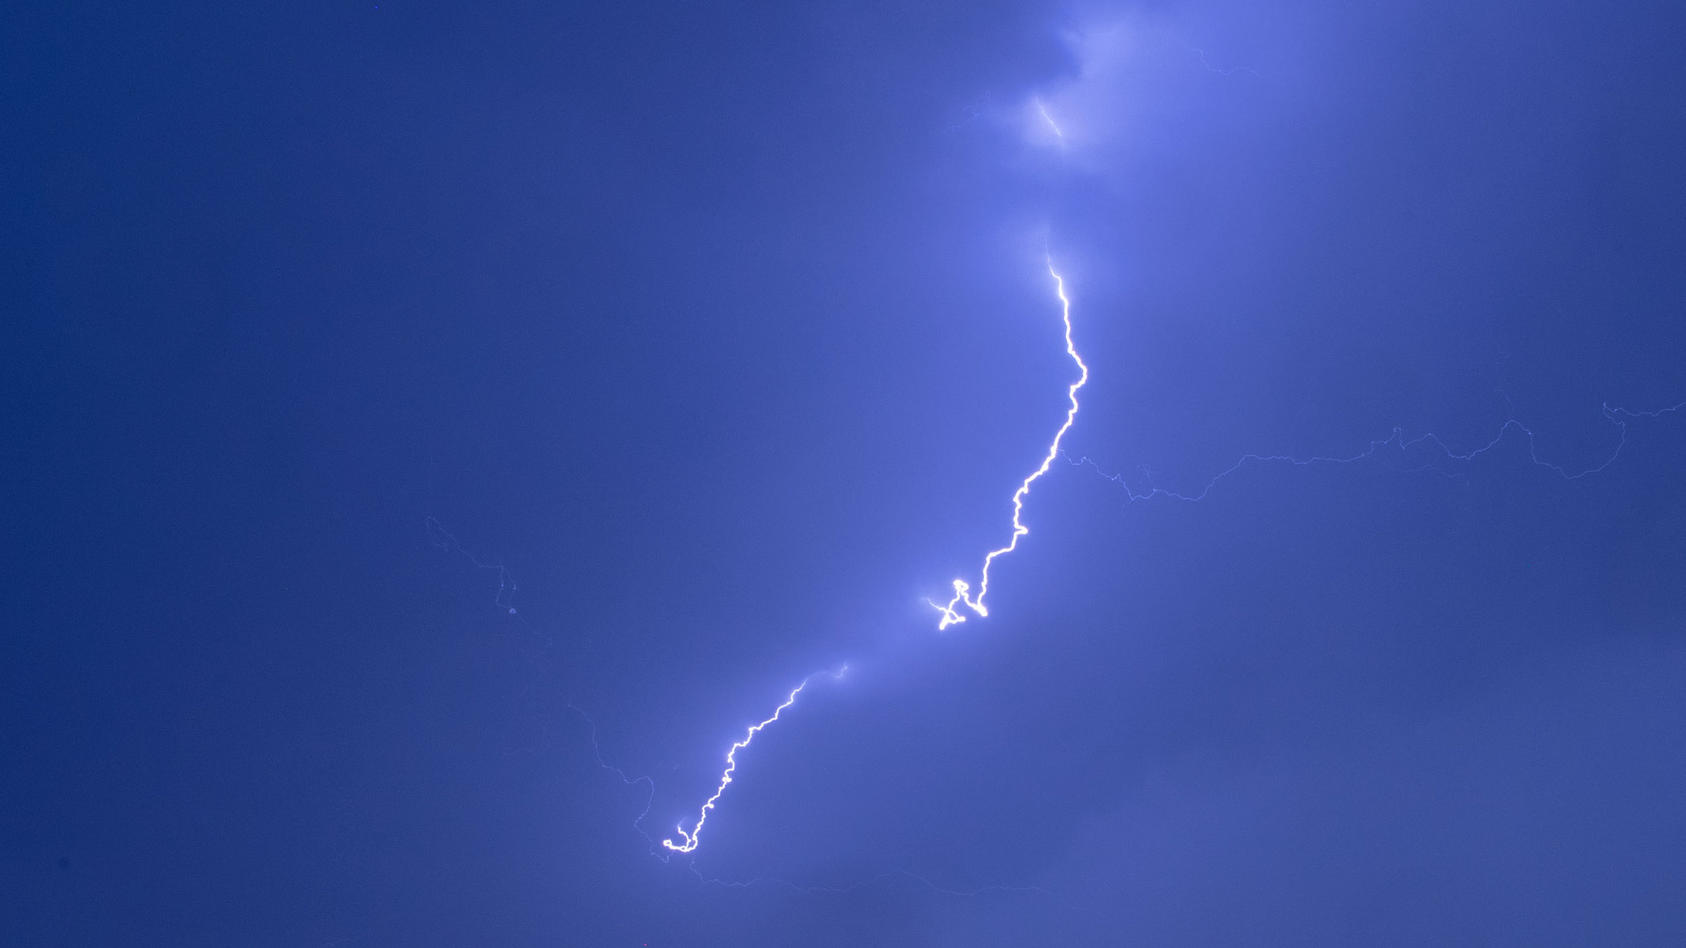 31.07.2019, Mecklenburg-Vorpommern, Pokrent: Ein Blitz ist bei einem starken Gewitter über einer Windkraftanlage zu sehen. Der Deutsche Wetterdienst hatte für Mecklenburg-Vorpommern vor örtlich starken Gewittern, teils mit Starkregen mit rund 20 Lite